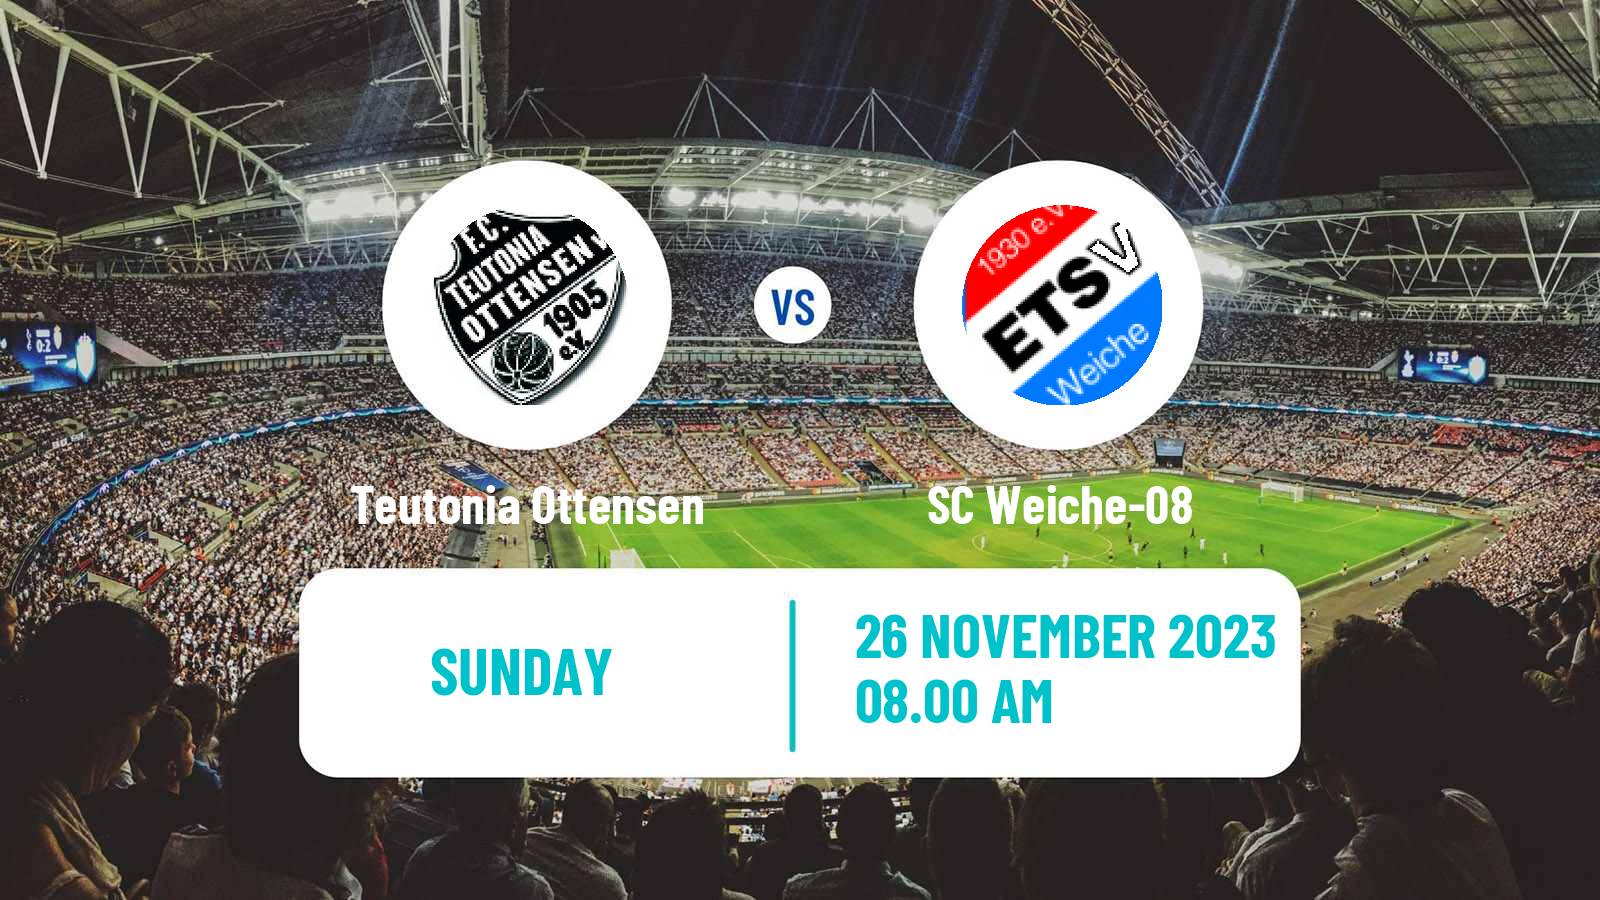 Soccer German Regionalliga North Teutonia Ottensen - SC Weiche-08